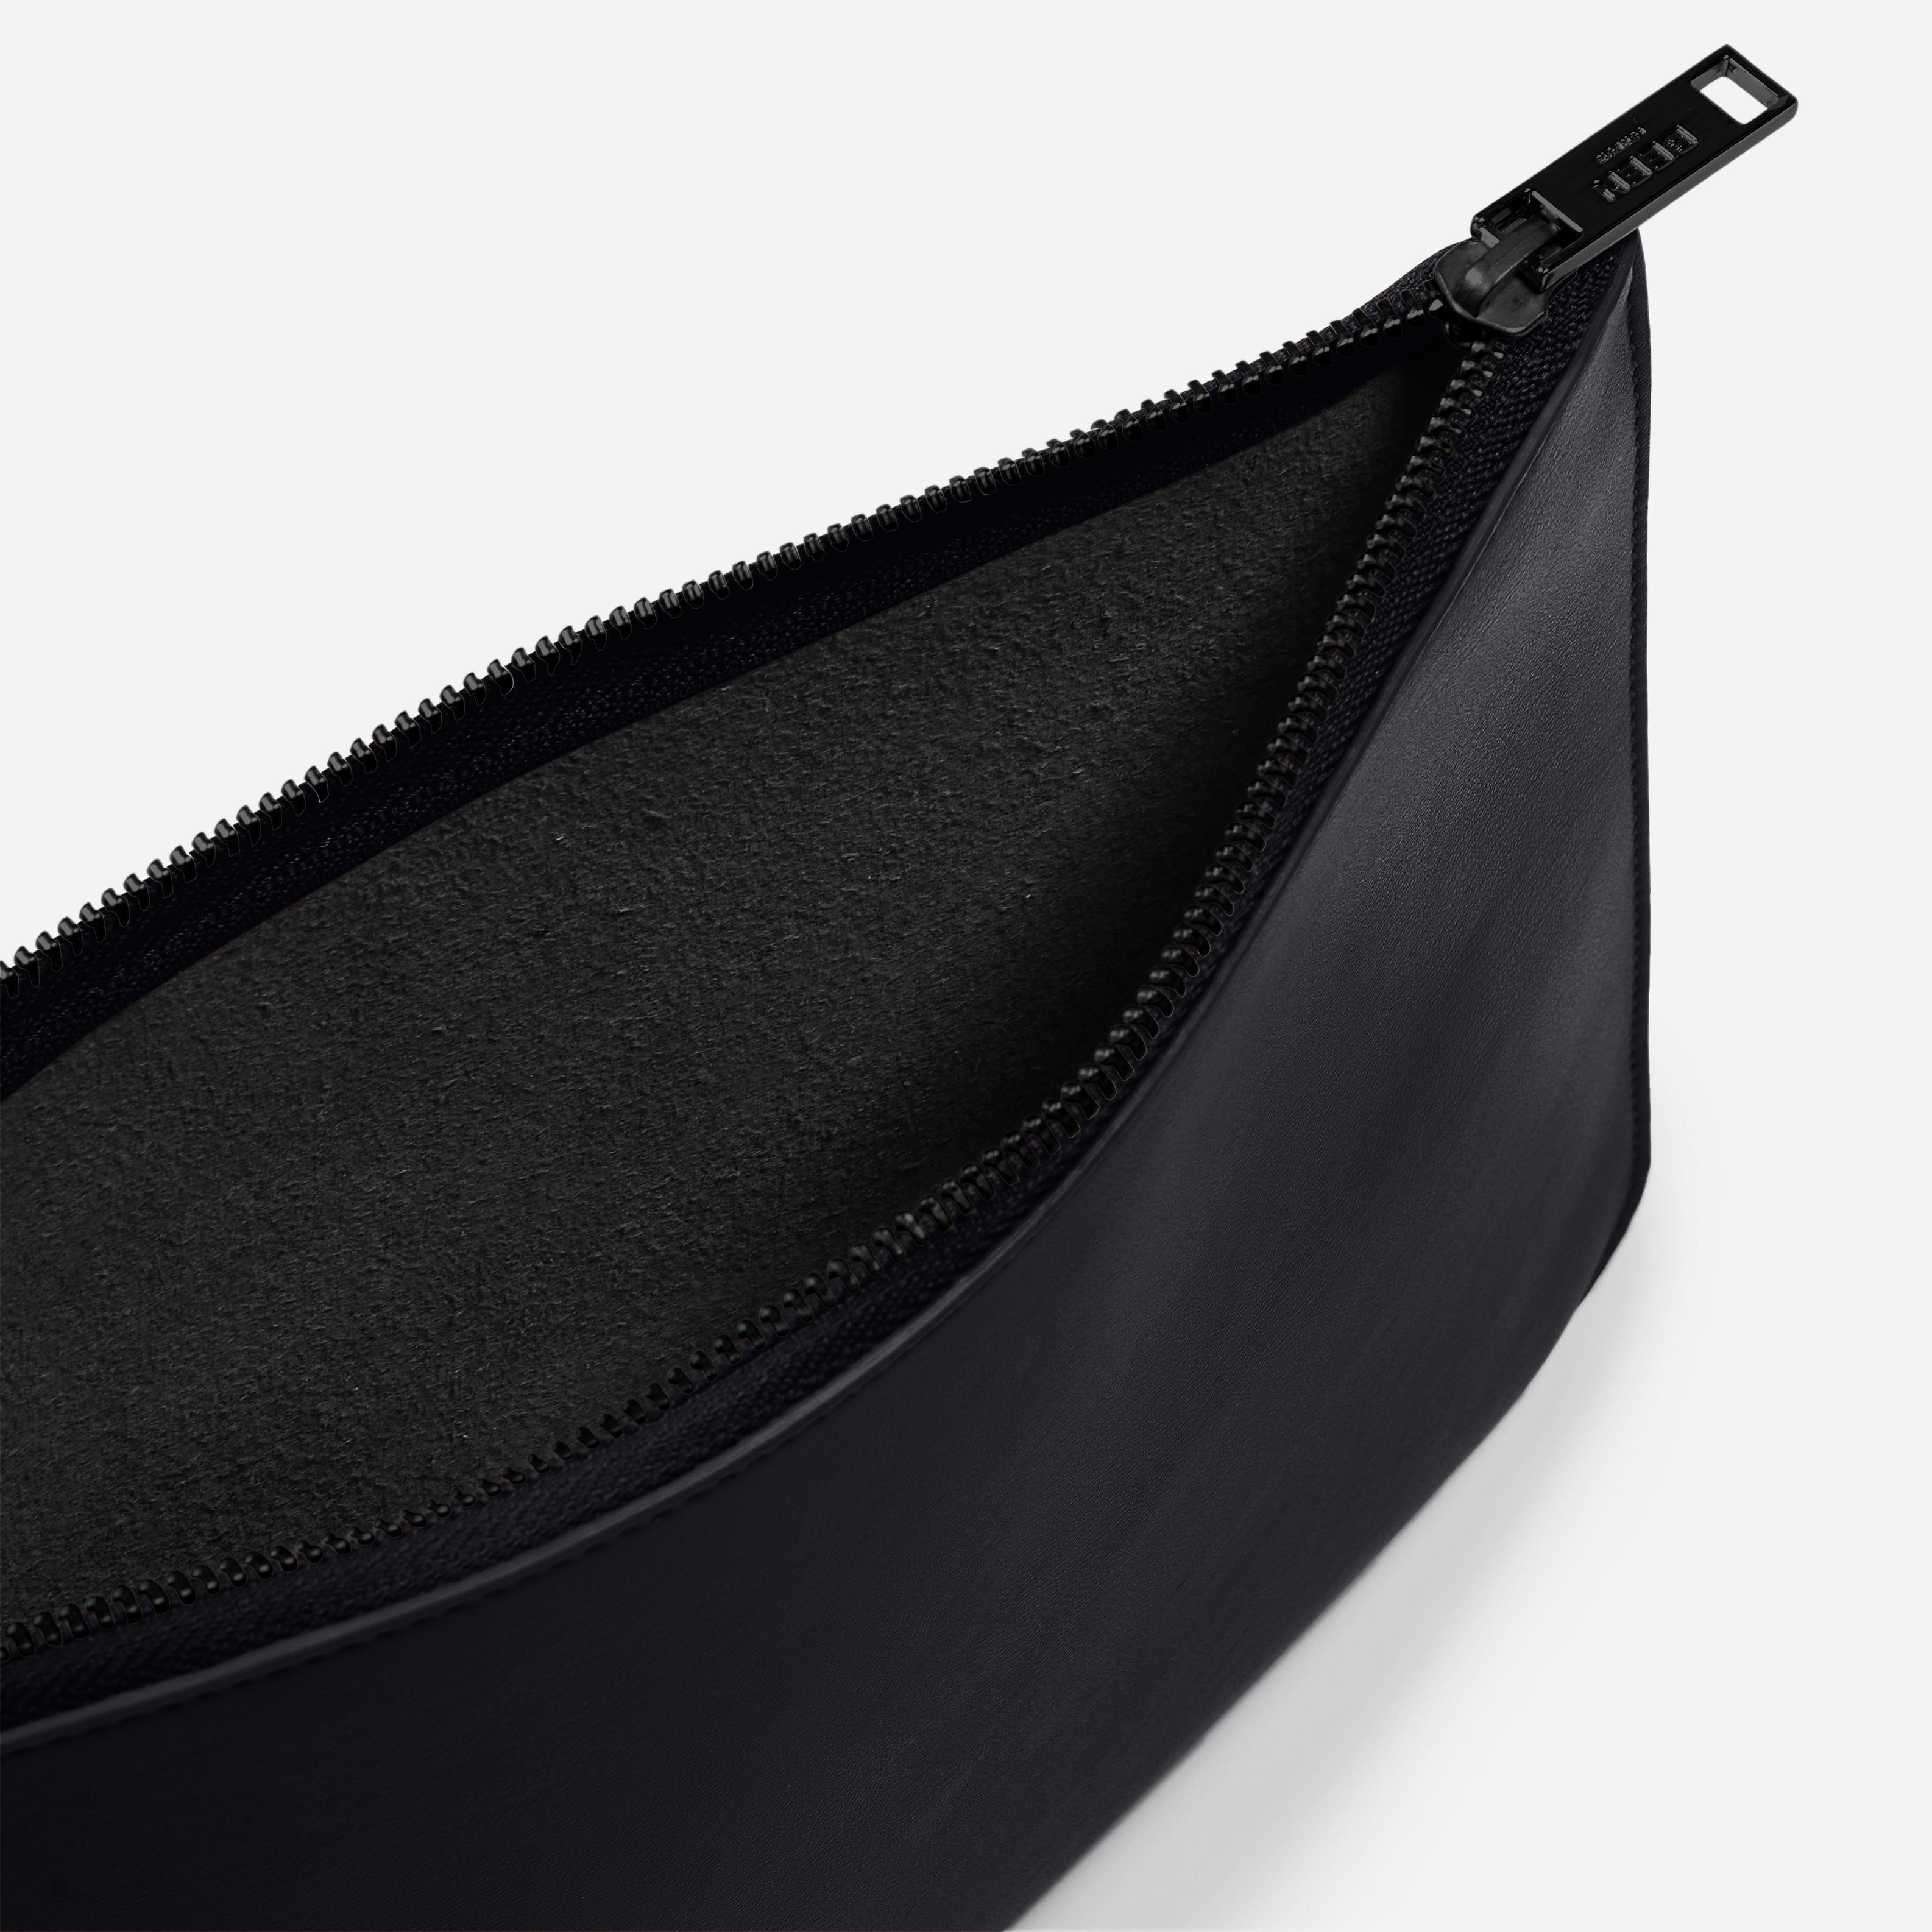 Yael Clutch bag- Medium Pouch in Black Onyx spacious interior